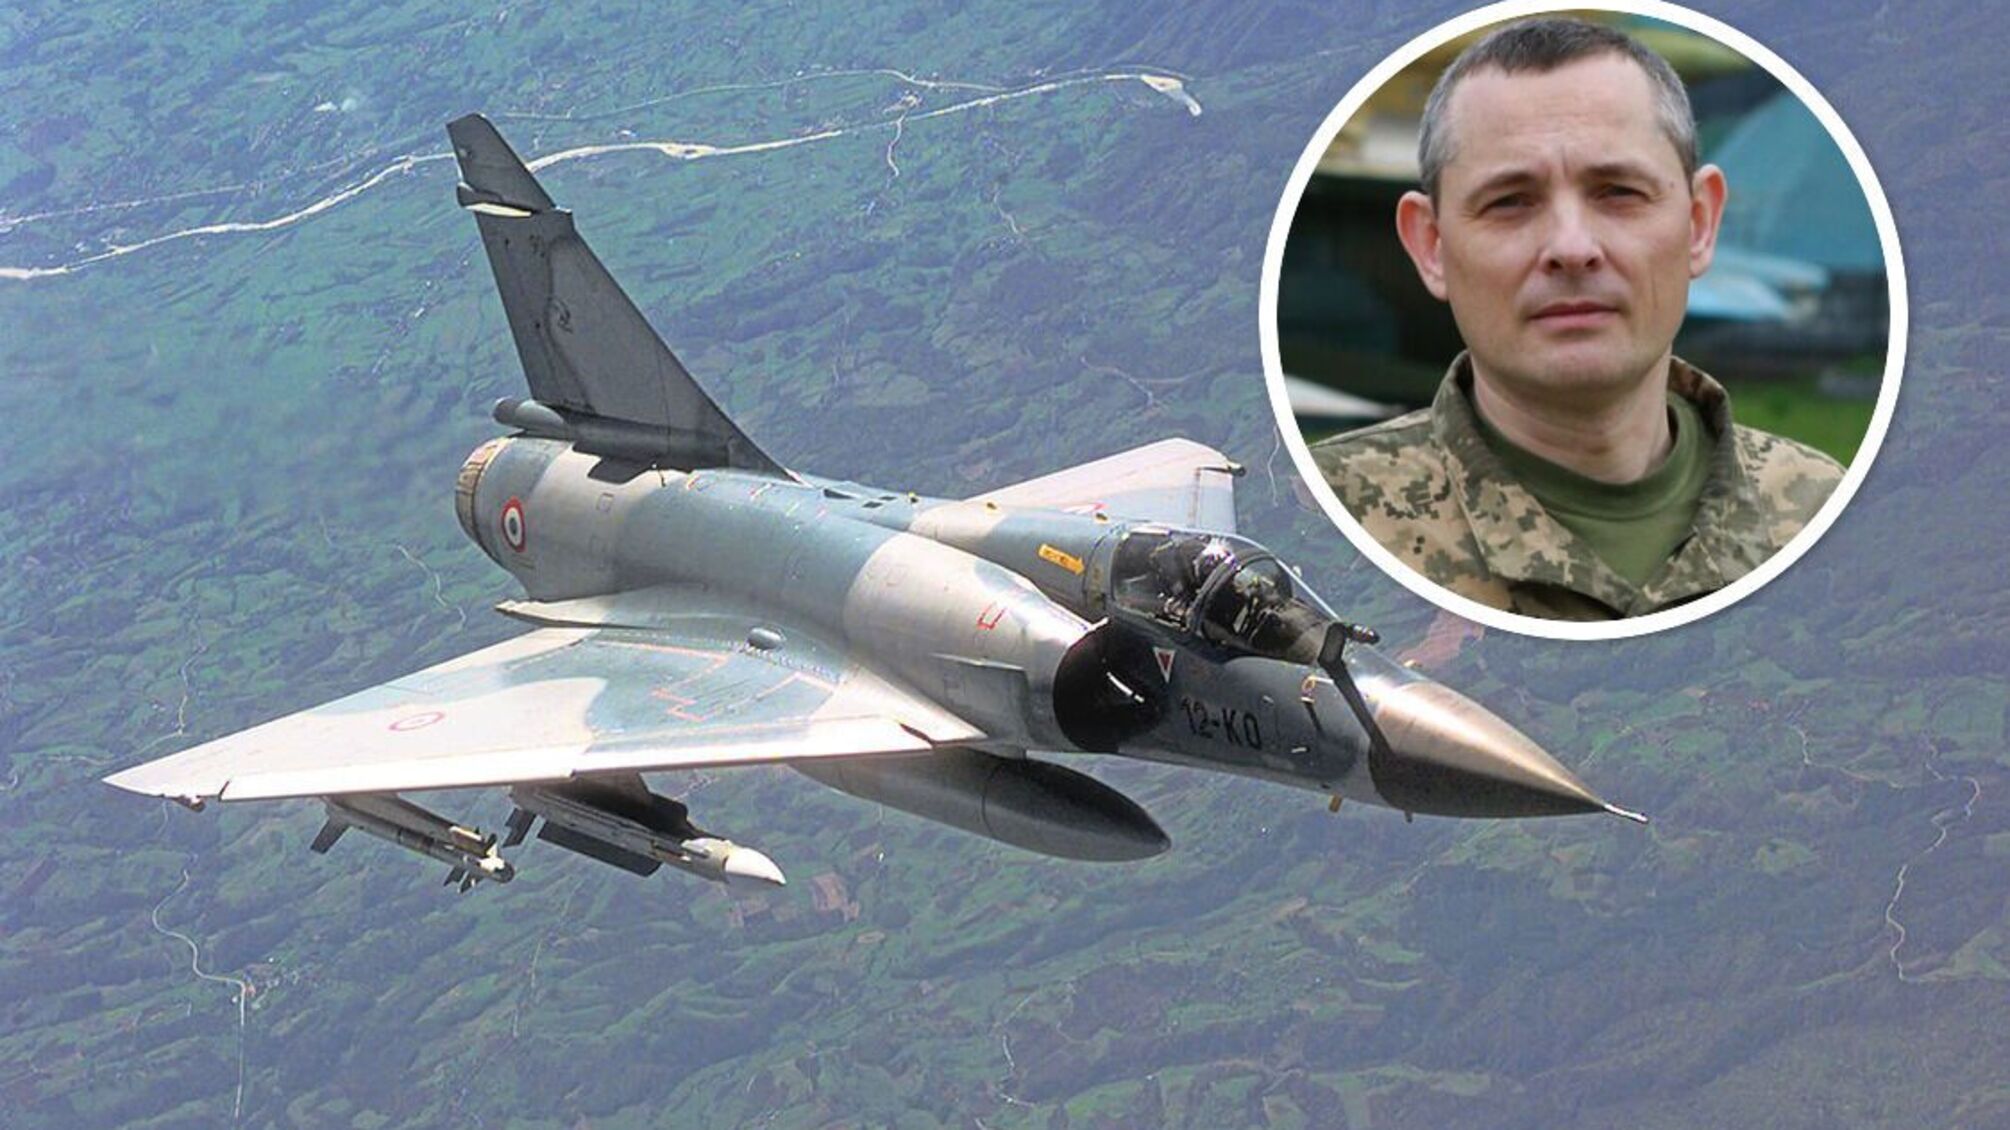 Юрий Игнат комментирует информацию об истребителях Mirage 2000, производства Франции